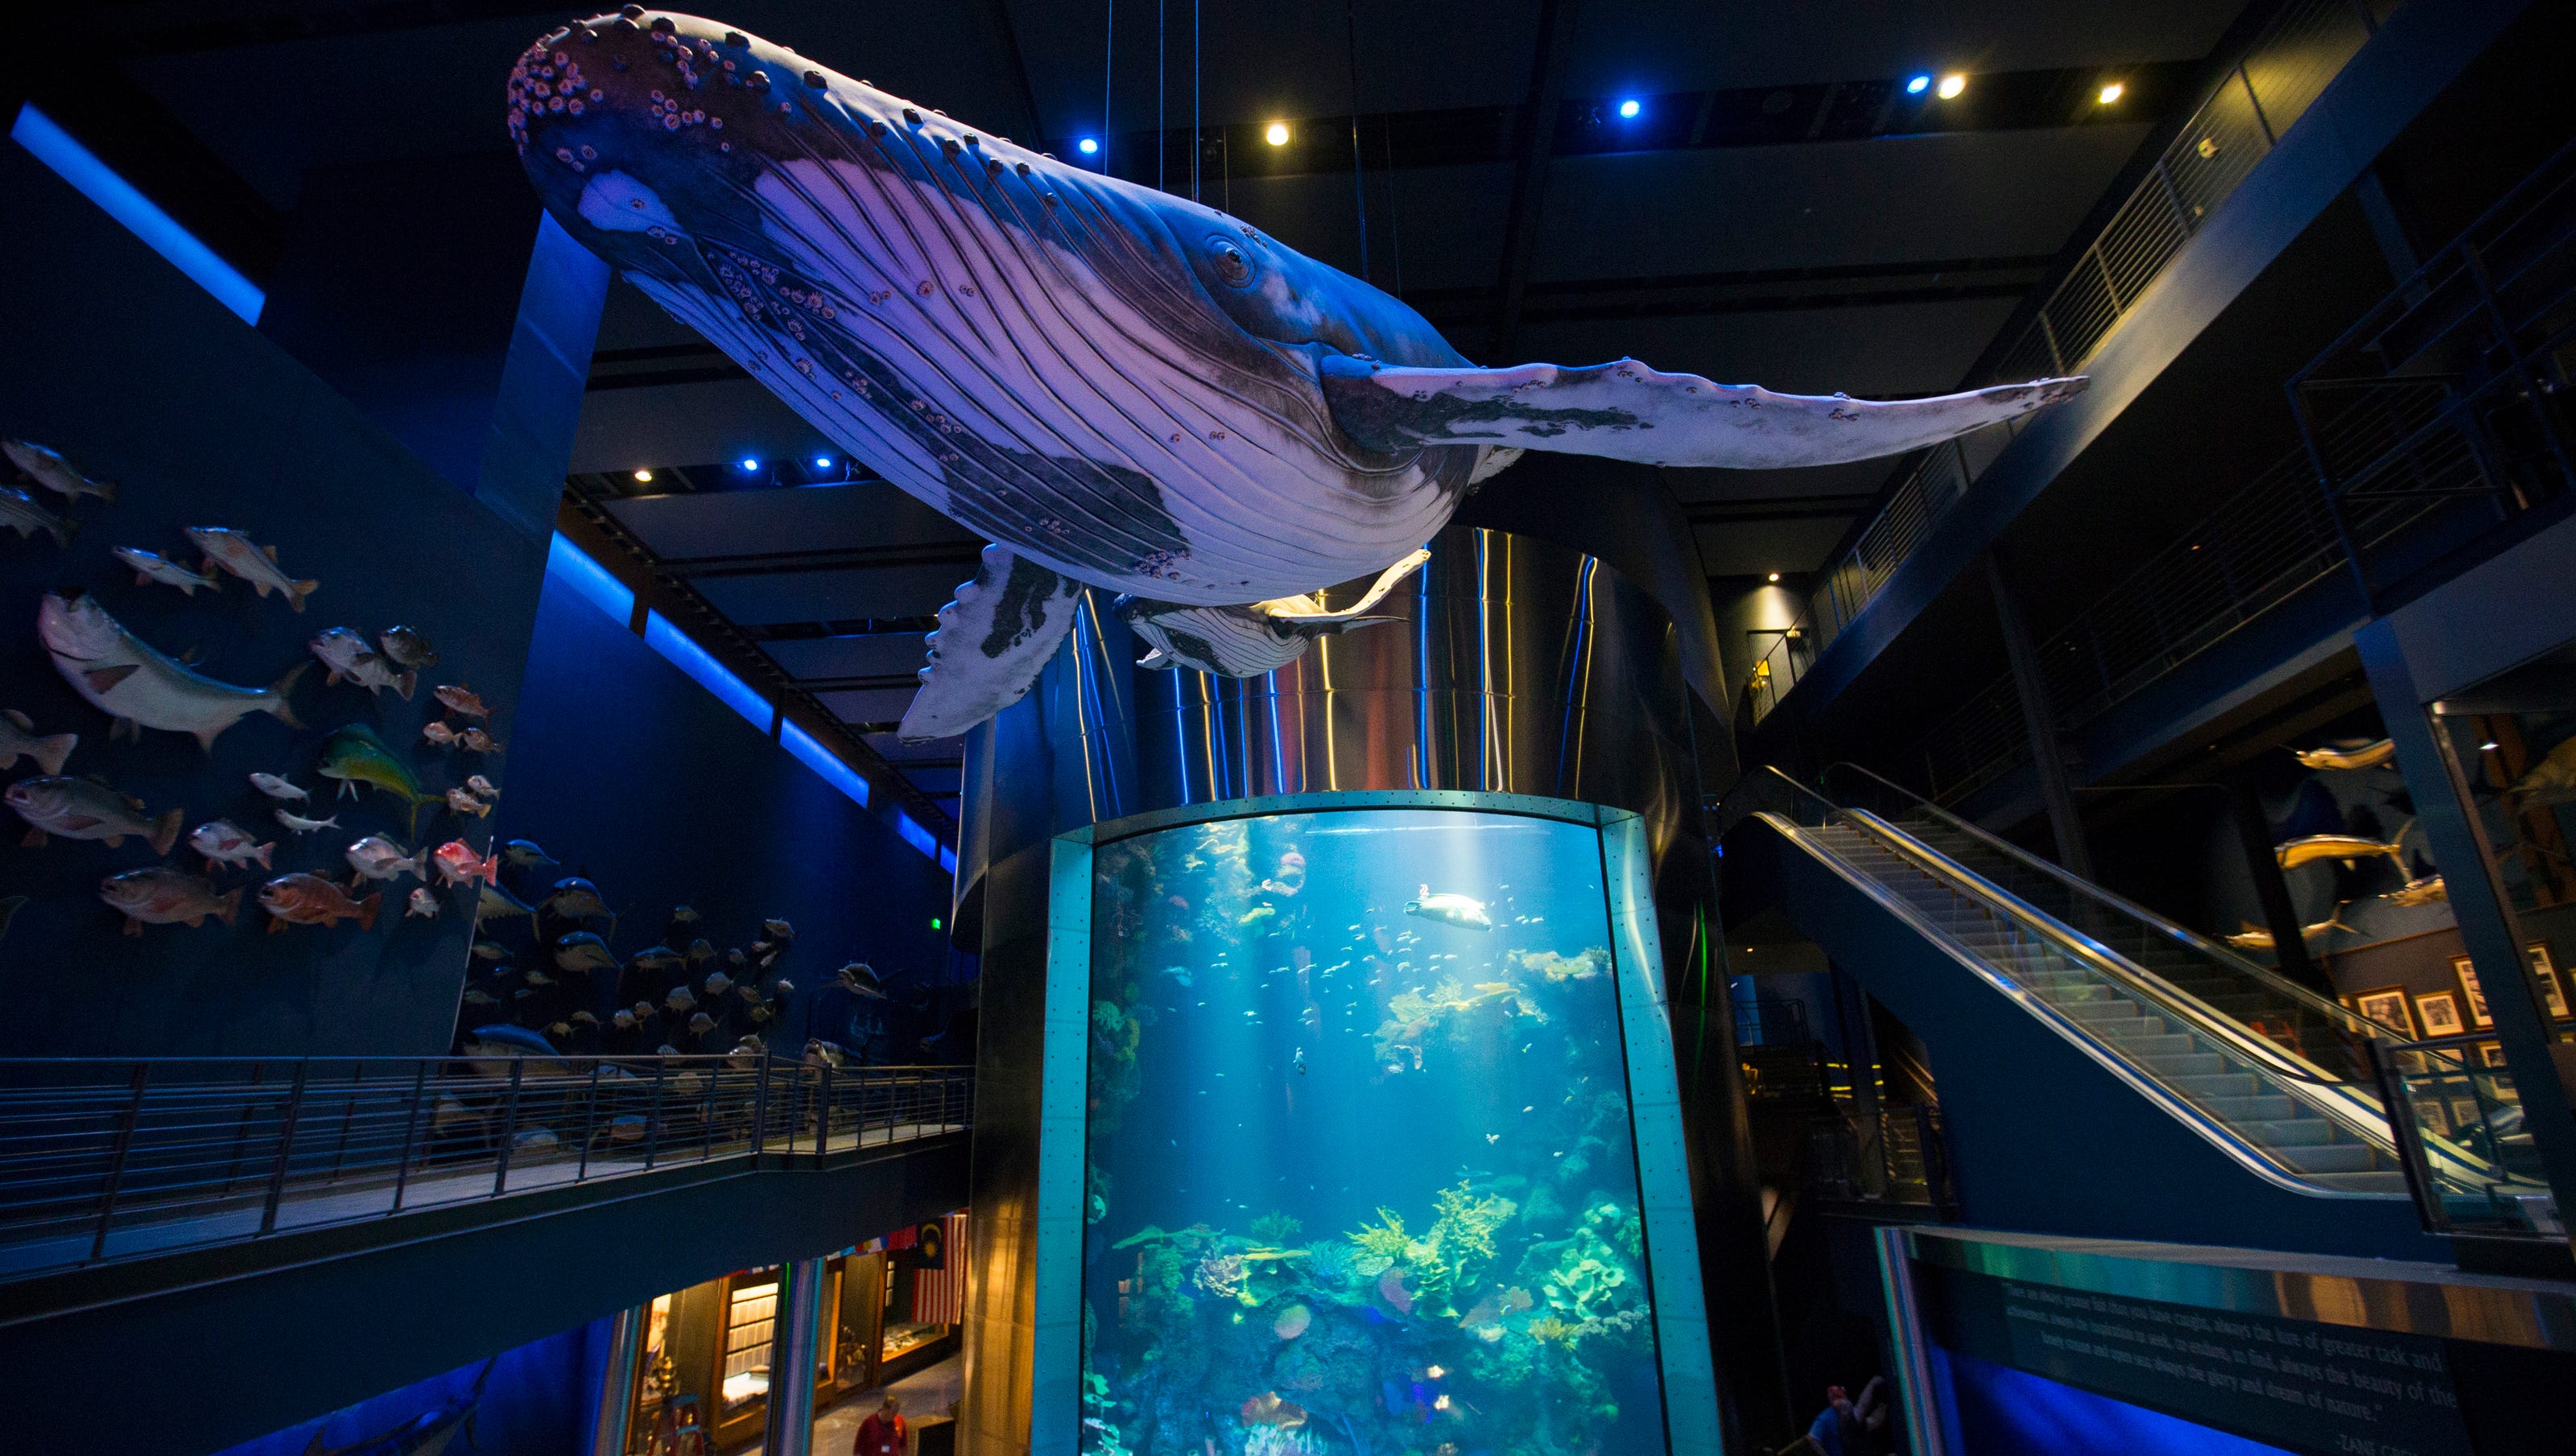 Wonders of Wildlife aquarium and museum debuts this week - 636409923942649387 TWOW00332